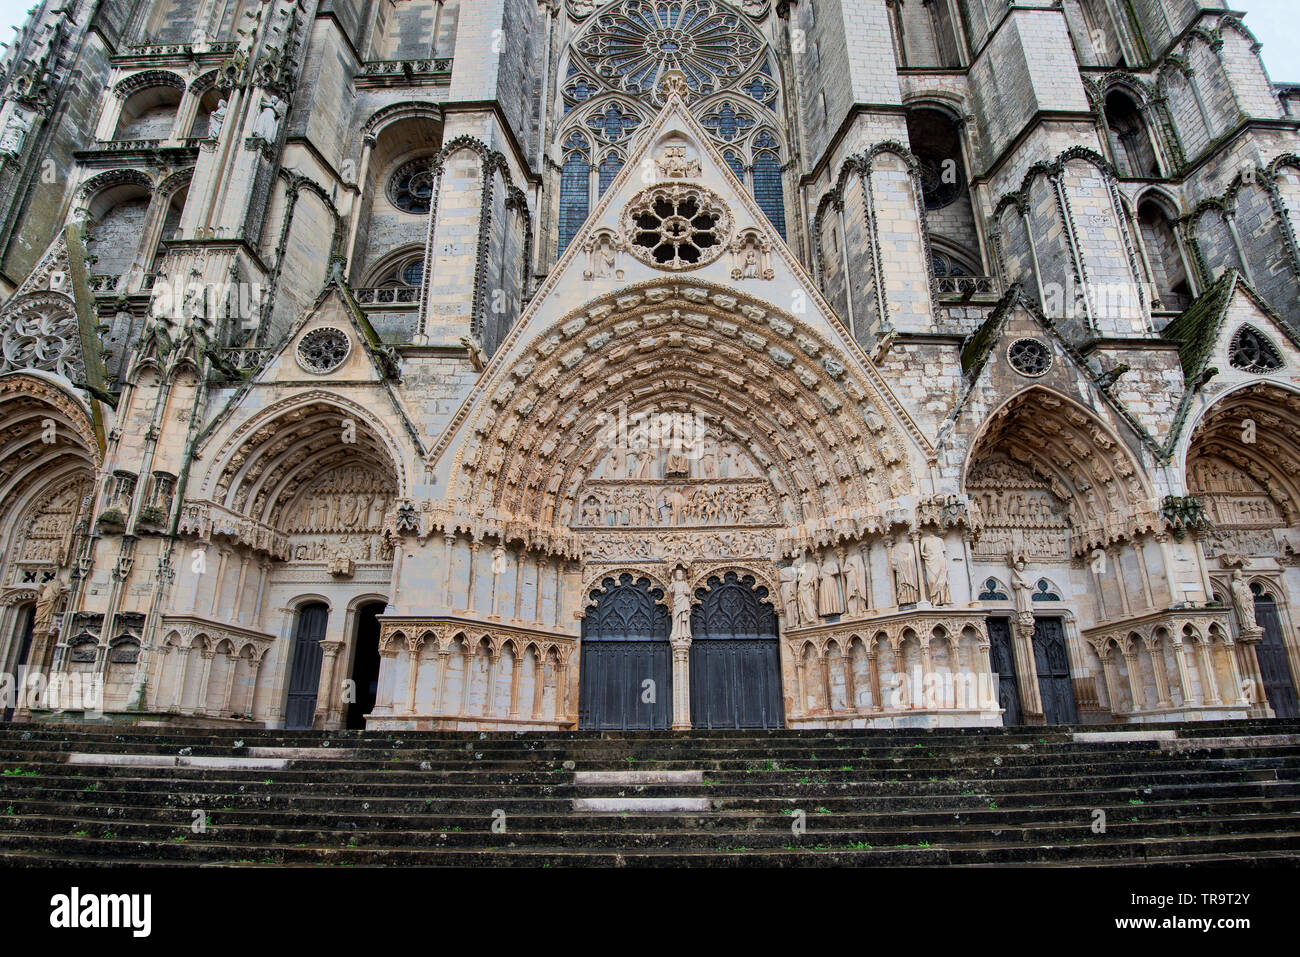 La cattedrale di Bourges è una chiesa cattolica romana situato a Bourges, Francia. È nel romanico e gotico stili architettonici. Foto Stock